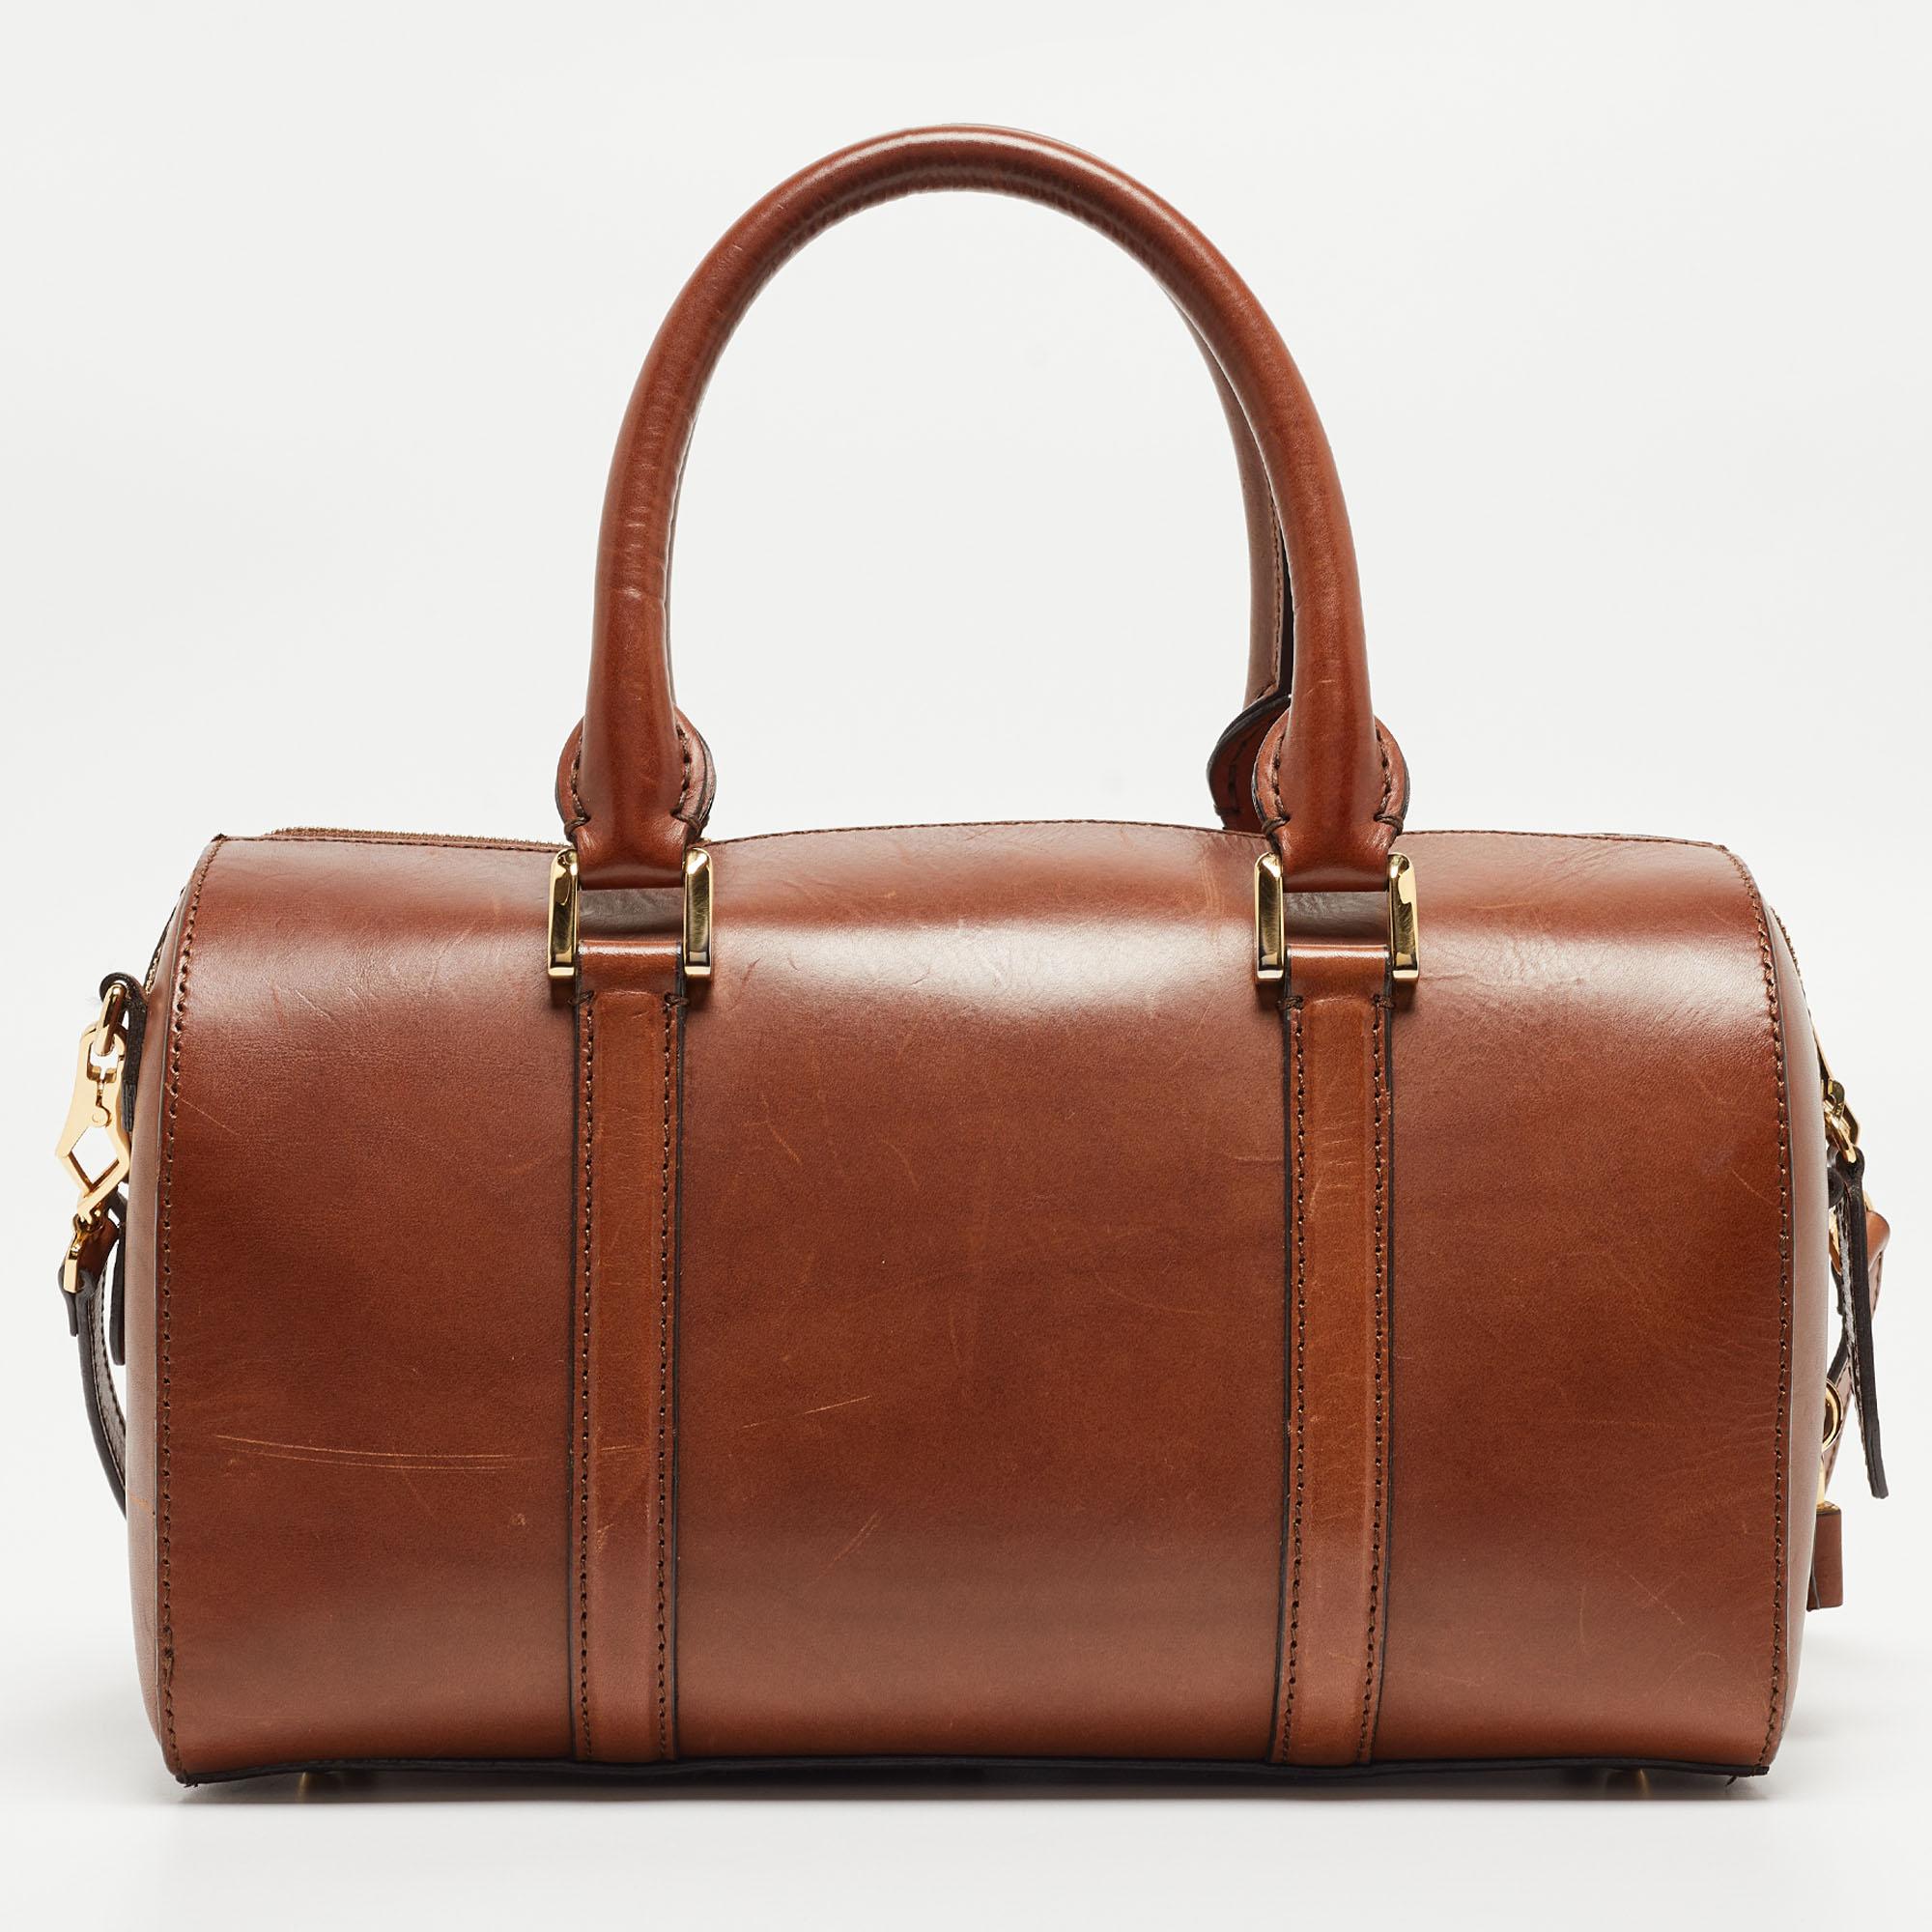 Eine klassische Handtasche verspricht dauerhafte Attraktivität und unterstreicht Ihren Stil immer wieder aufs Neue. Diese braune Tasche von Burberry ist eine solche Kreation. Das ist ein guter Kauf.

Enthält: Abnehmbarer Gurt, Vorhängeschloss und